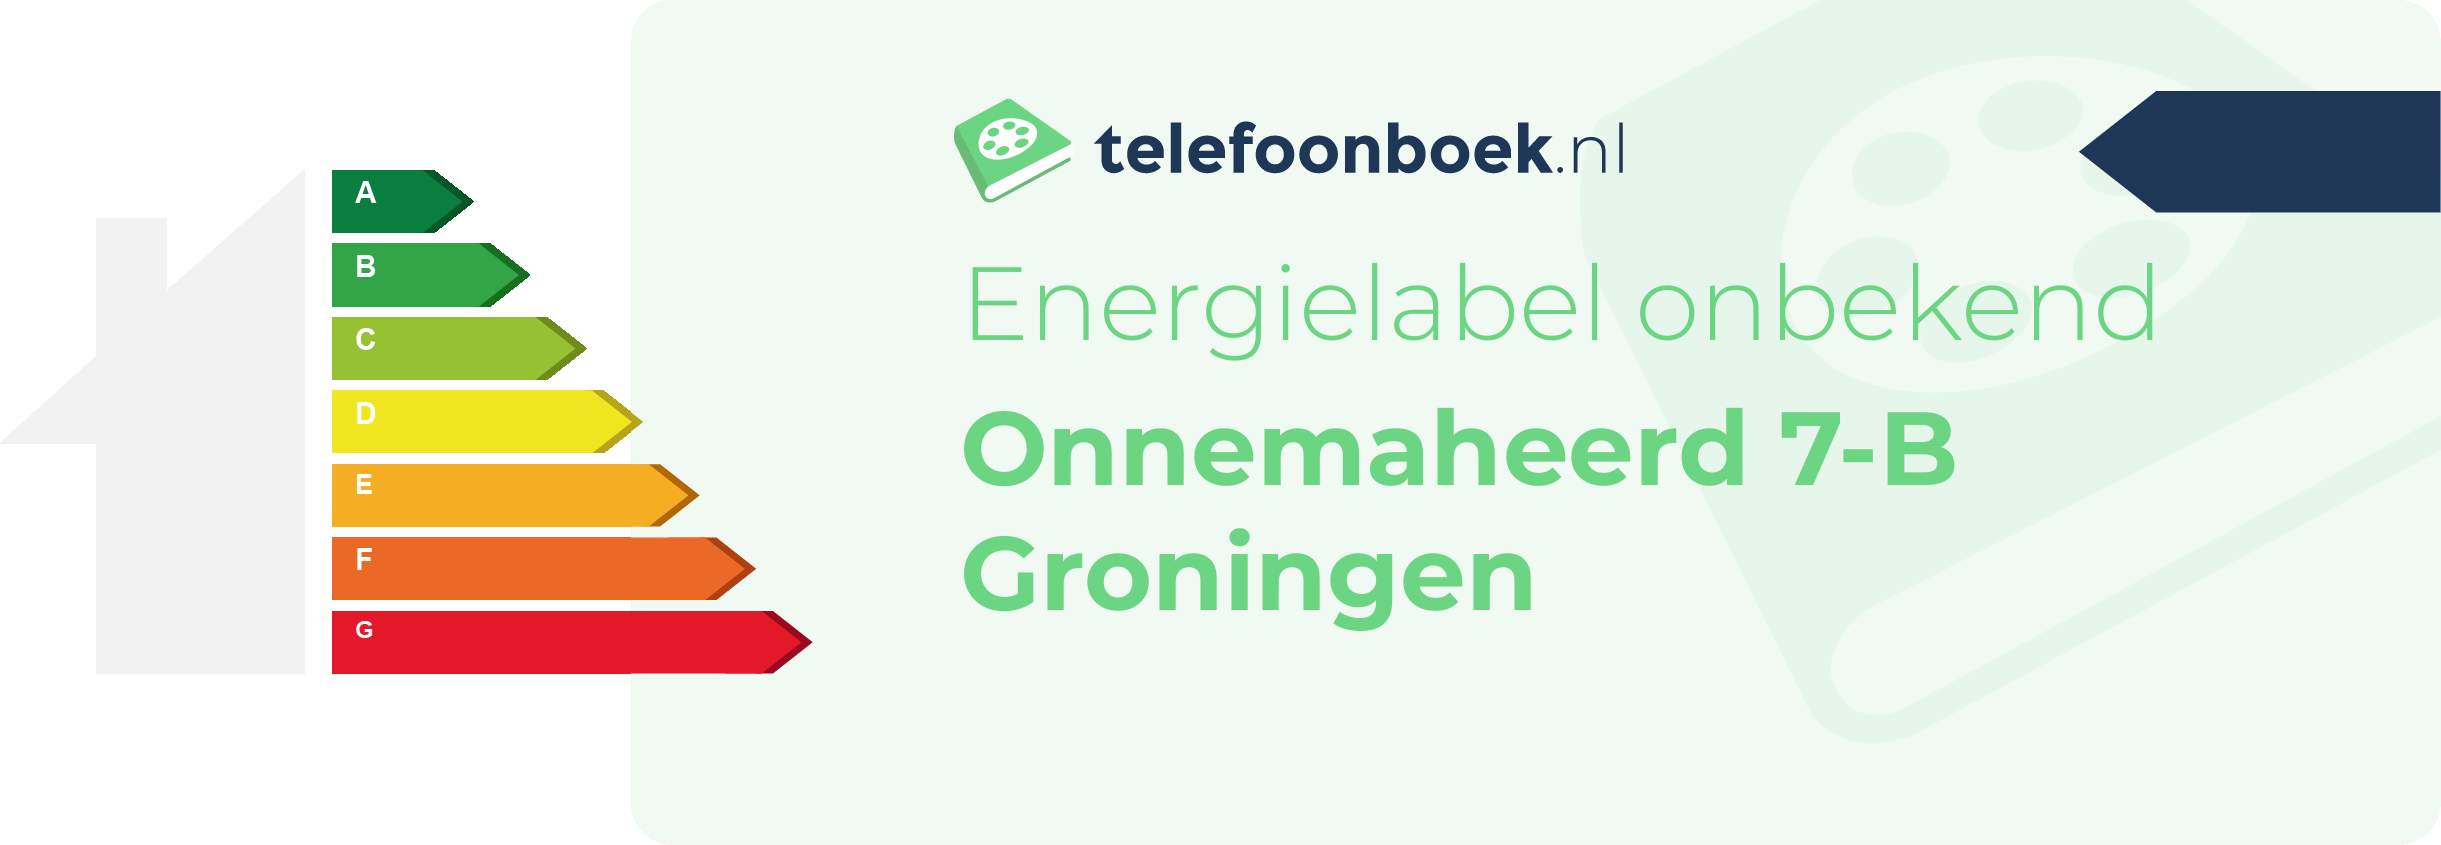 Energielabel Onnemaheerd 7-B Groningen